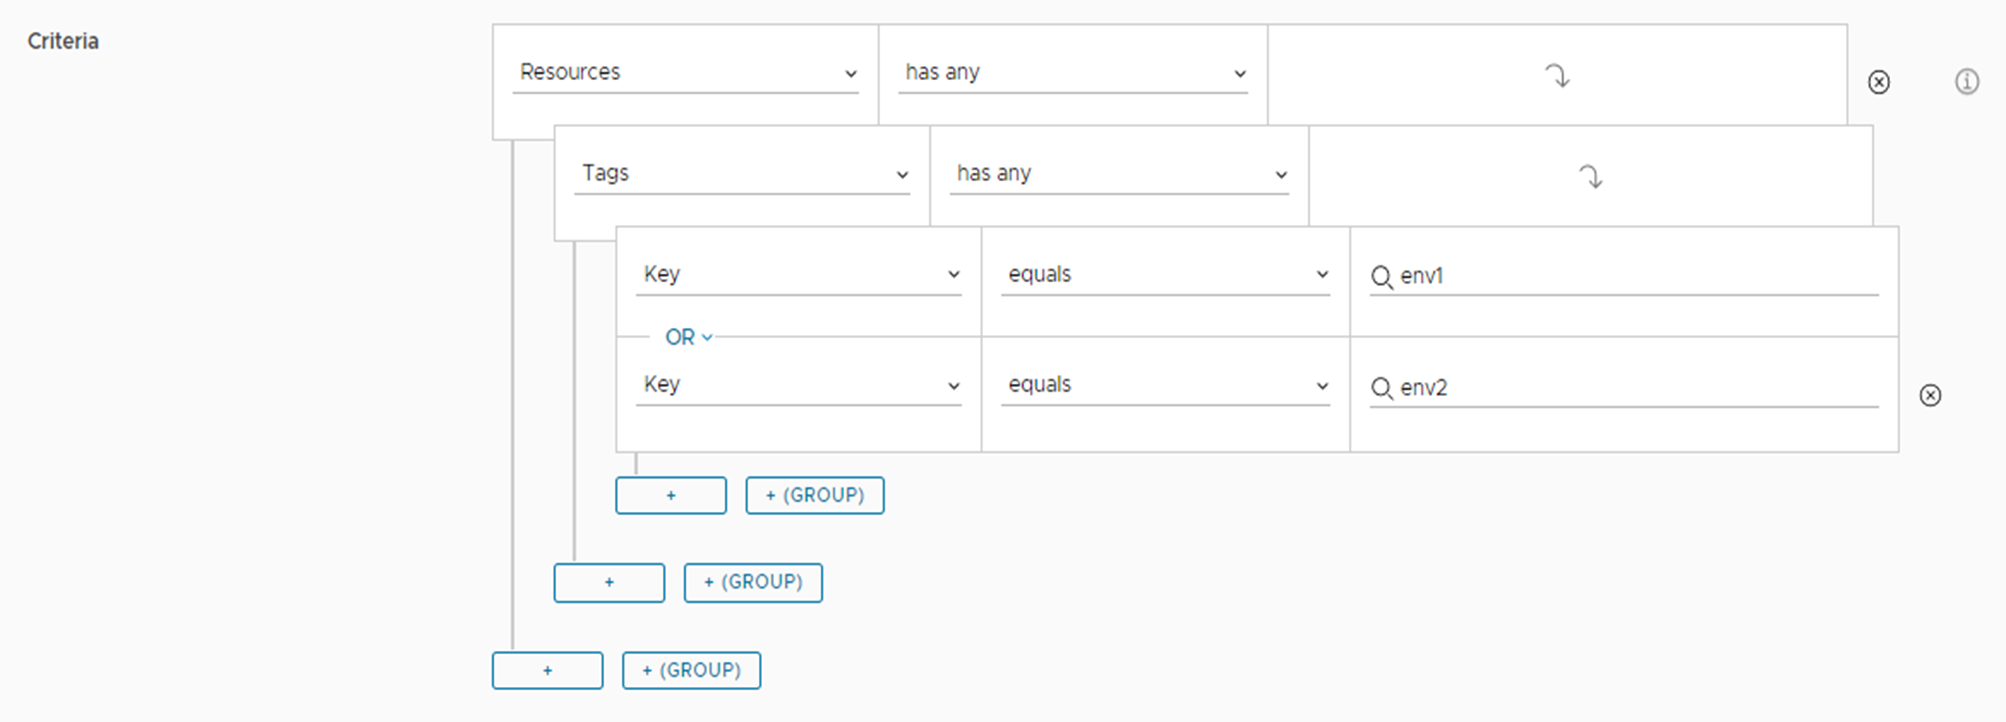 Beispiel eines Kriterienausdrucks für die Bereitstellung mehrerer Schlüssel, wie er auf der Benutzeroberfläche angezeigt wird.